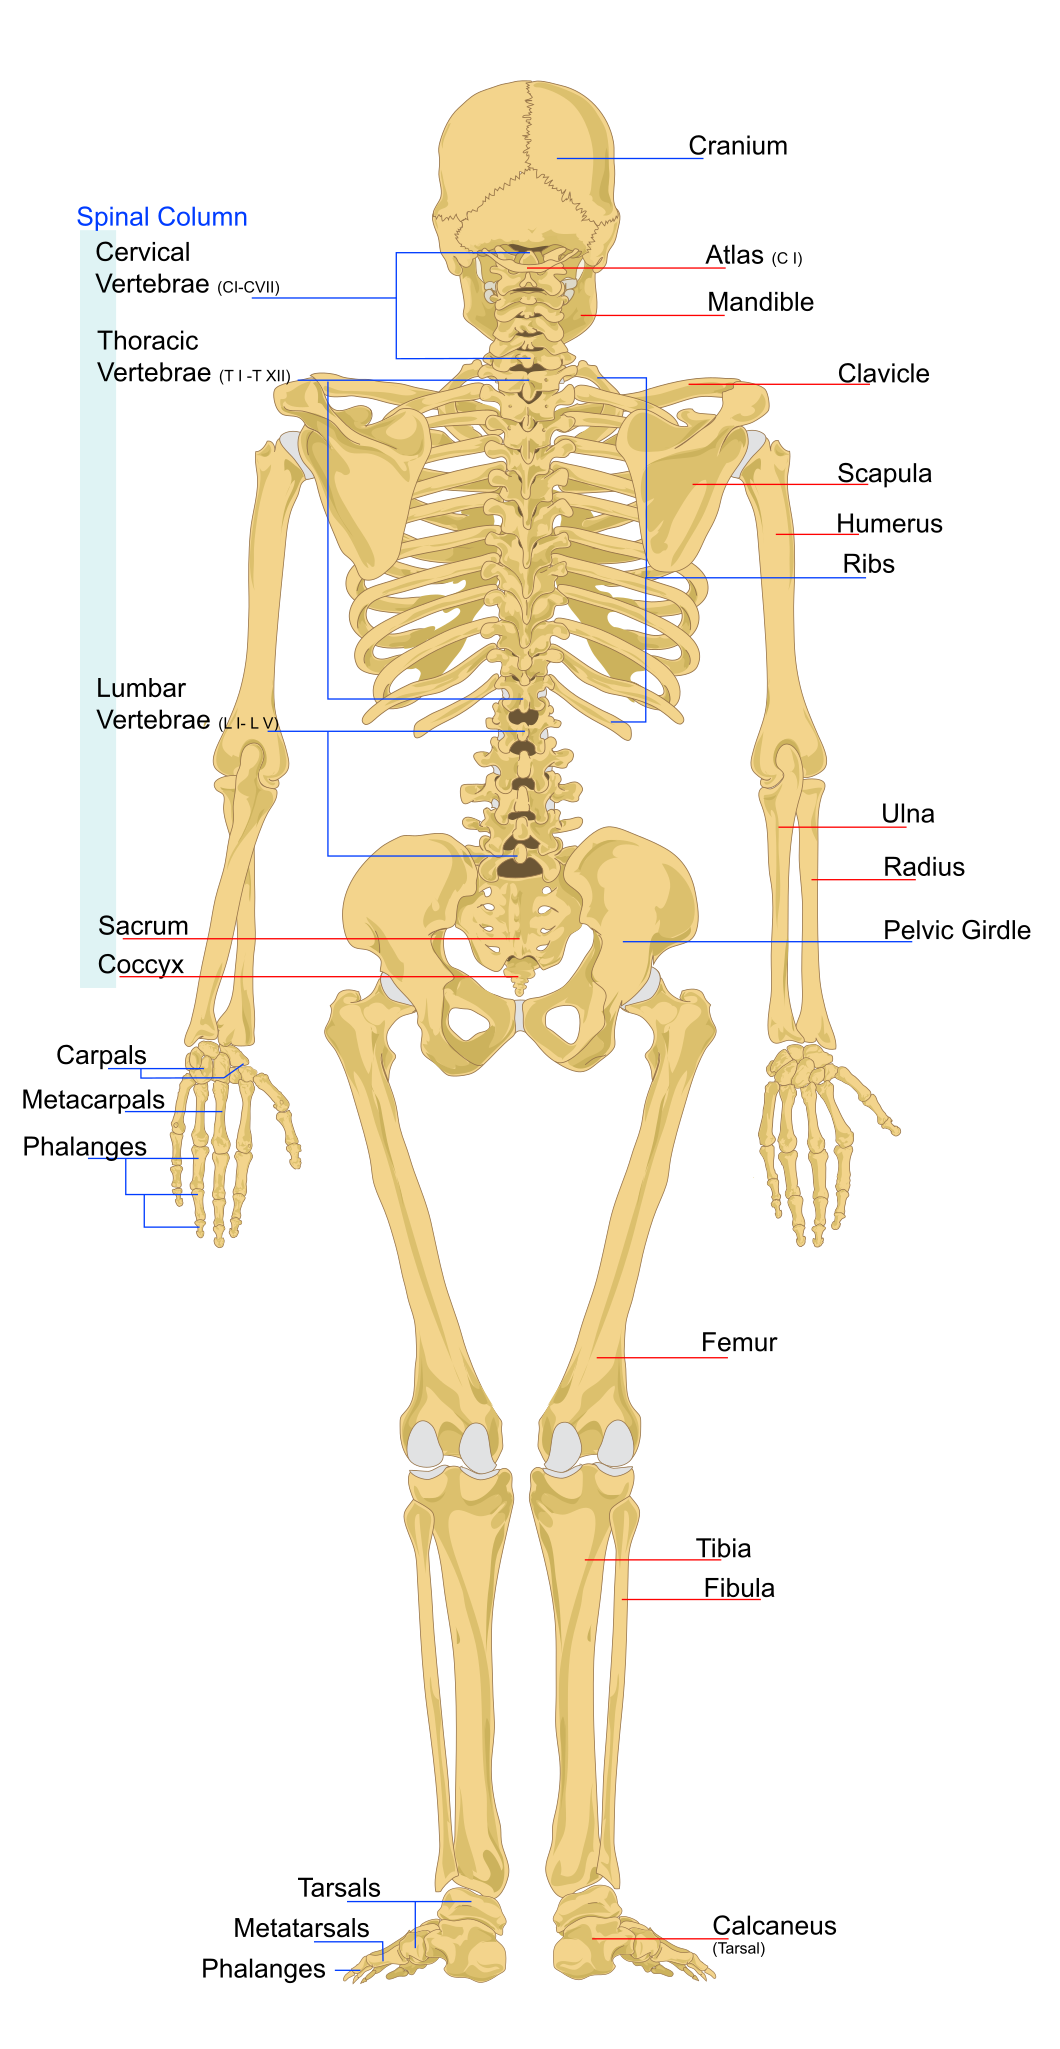 File:Human skeleton back en.svg - Wikipedia